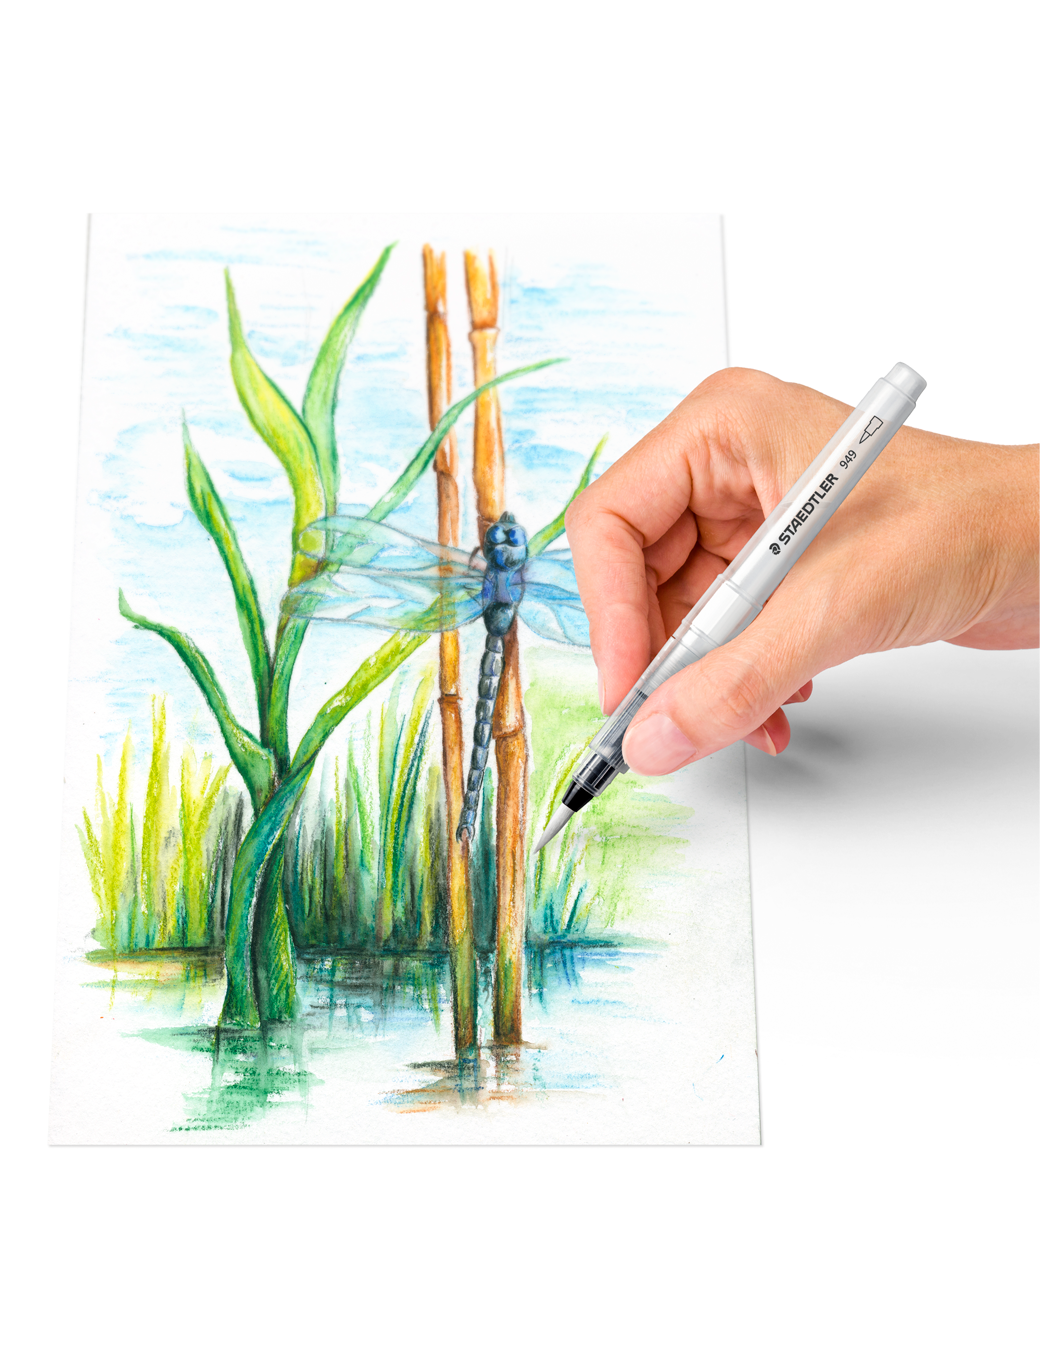 Watercolor starter kit, watercolor crayons + water brush